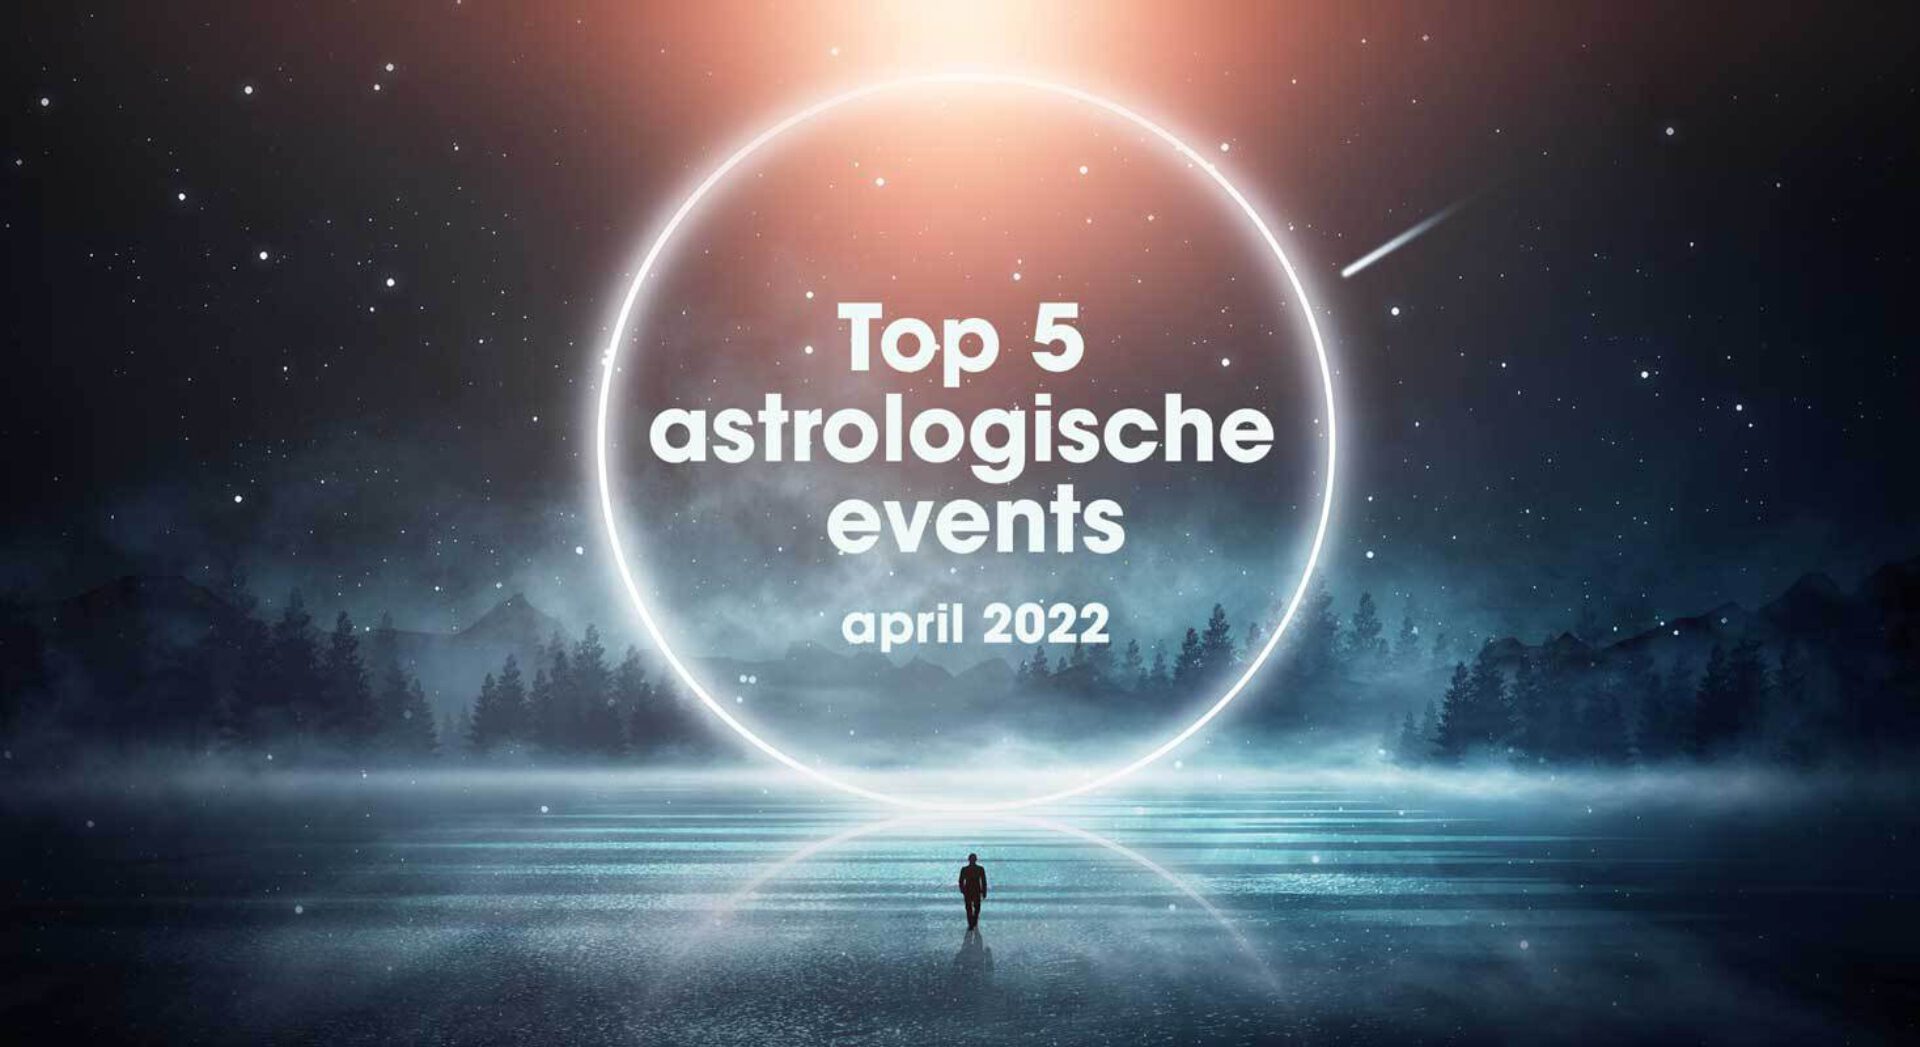 De top 5 astrologische gebeurtenissen in april 2022